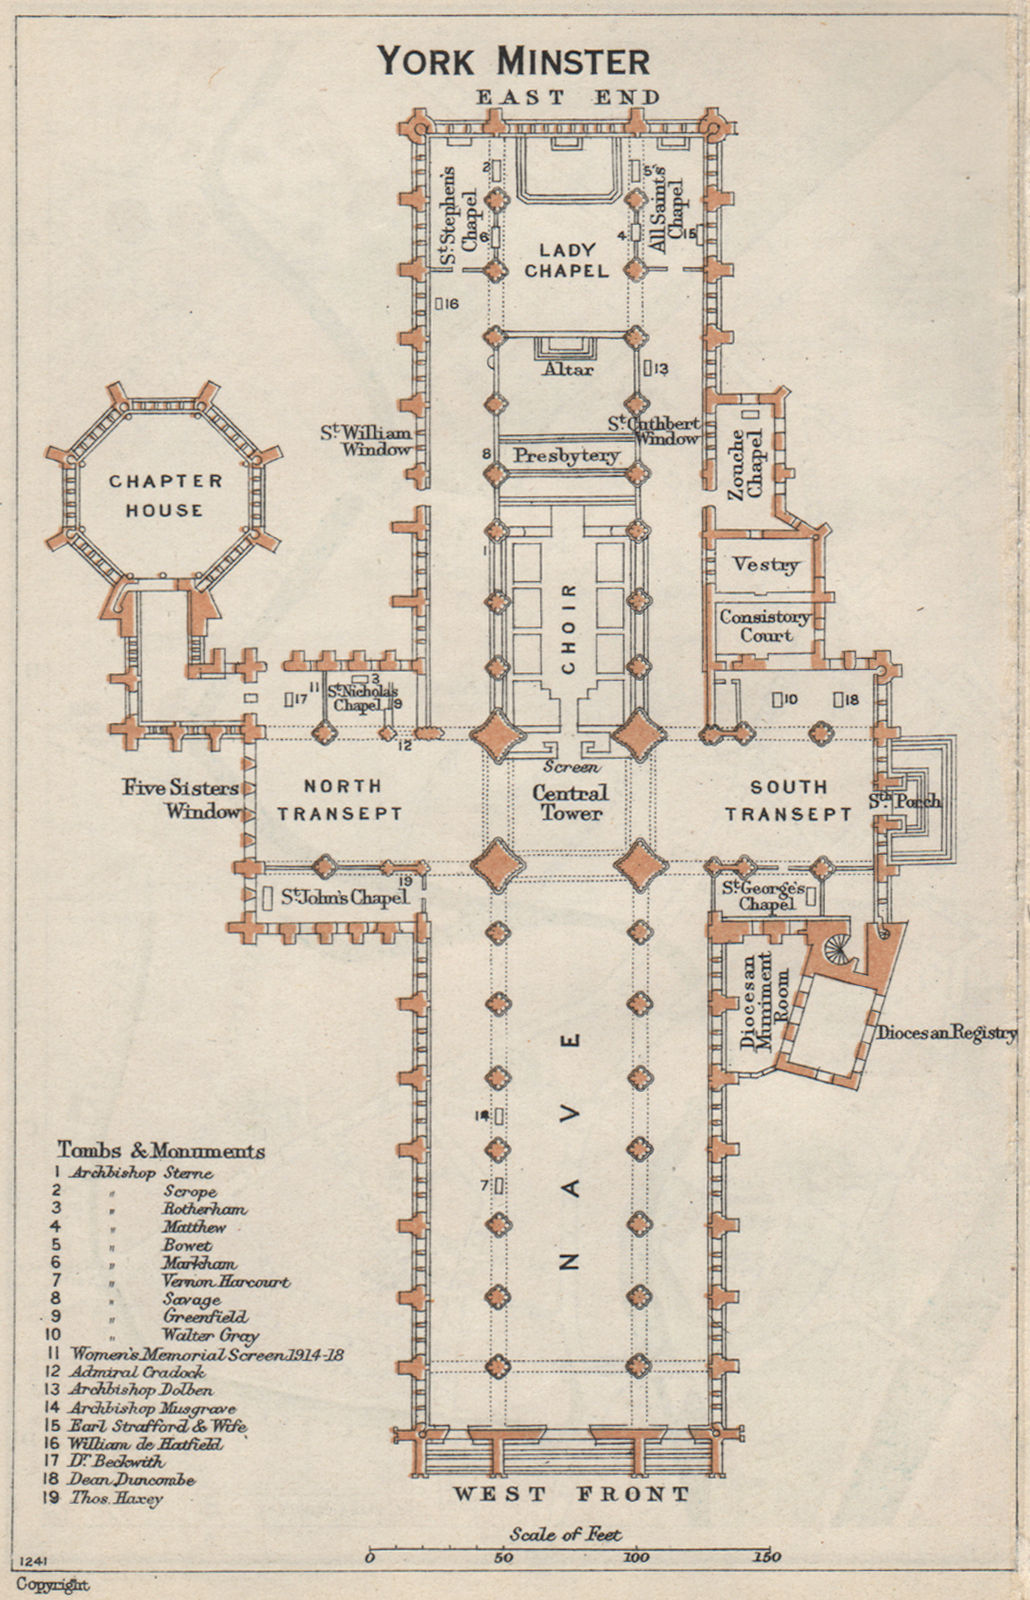 Associate Product YORK Minster vintage floor plan. Yorkshire 1957 old vintage map chart